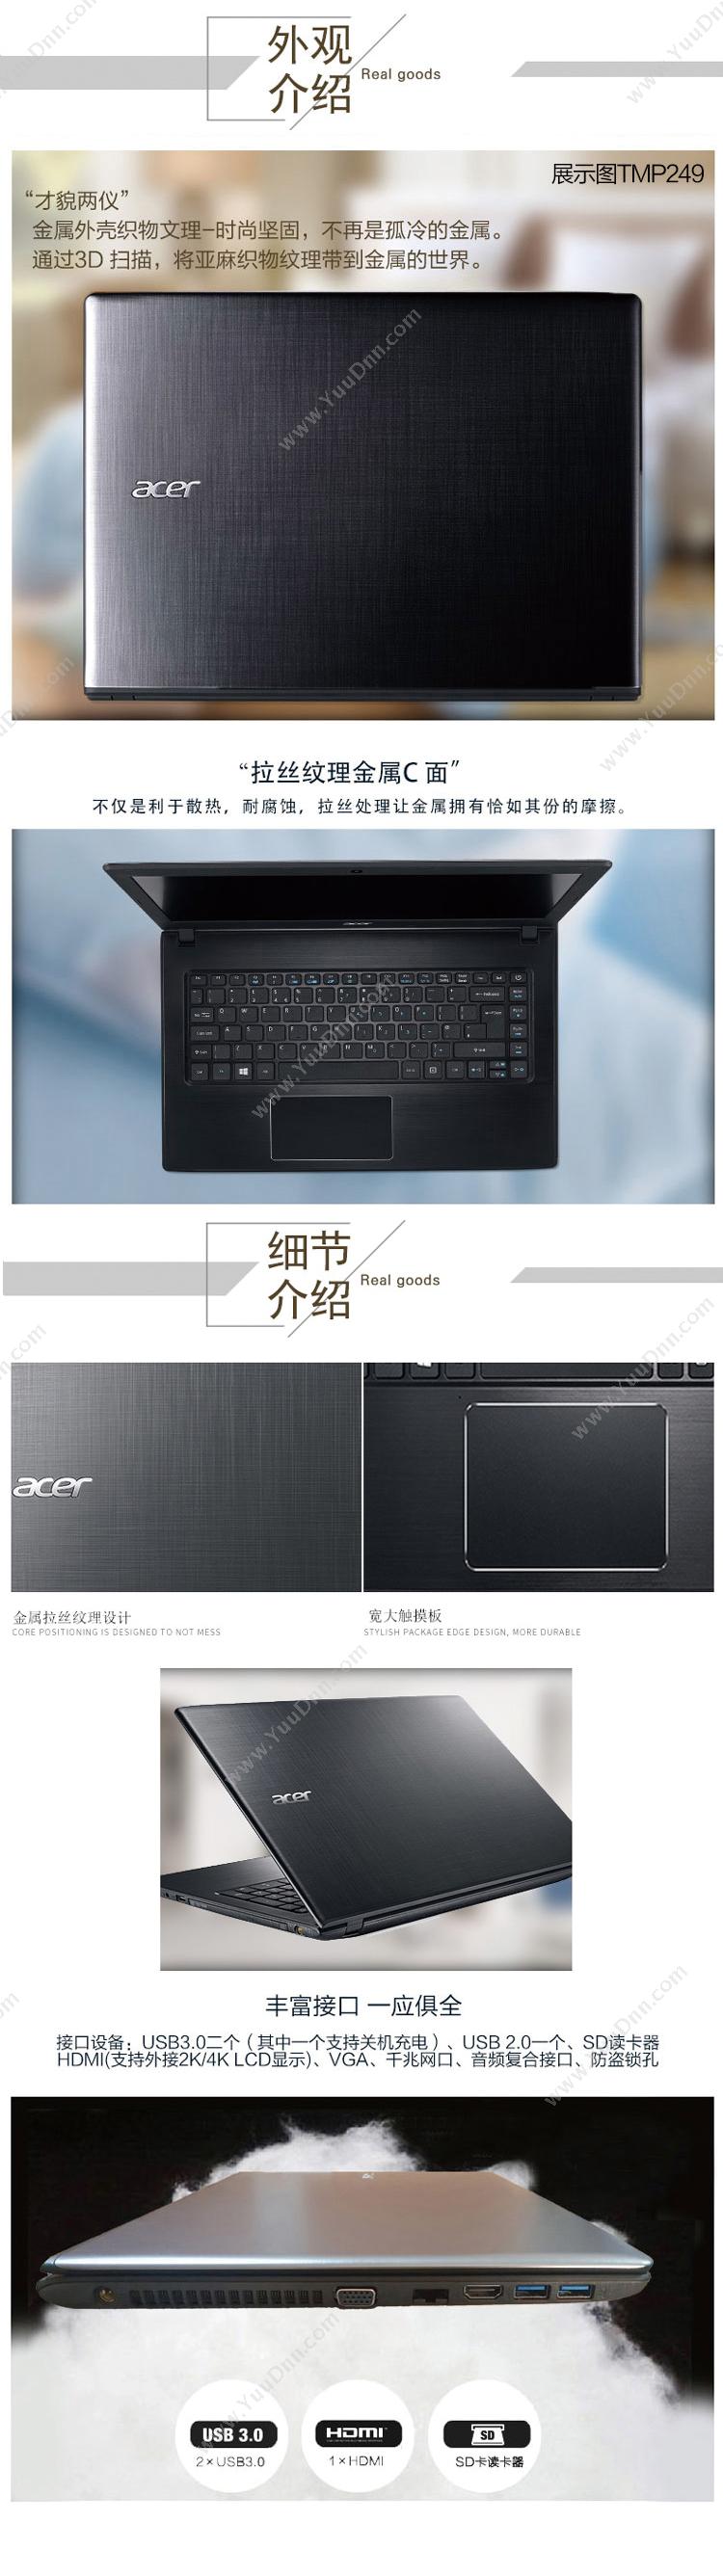 宏碁 Acer TravelMate P249-7176 便携式计算机 I7-6500U   /集成/8G/1T/2G独显/DVDRW/LED/14英寸/一年保修 平板电脑